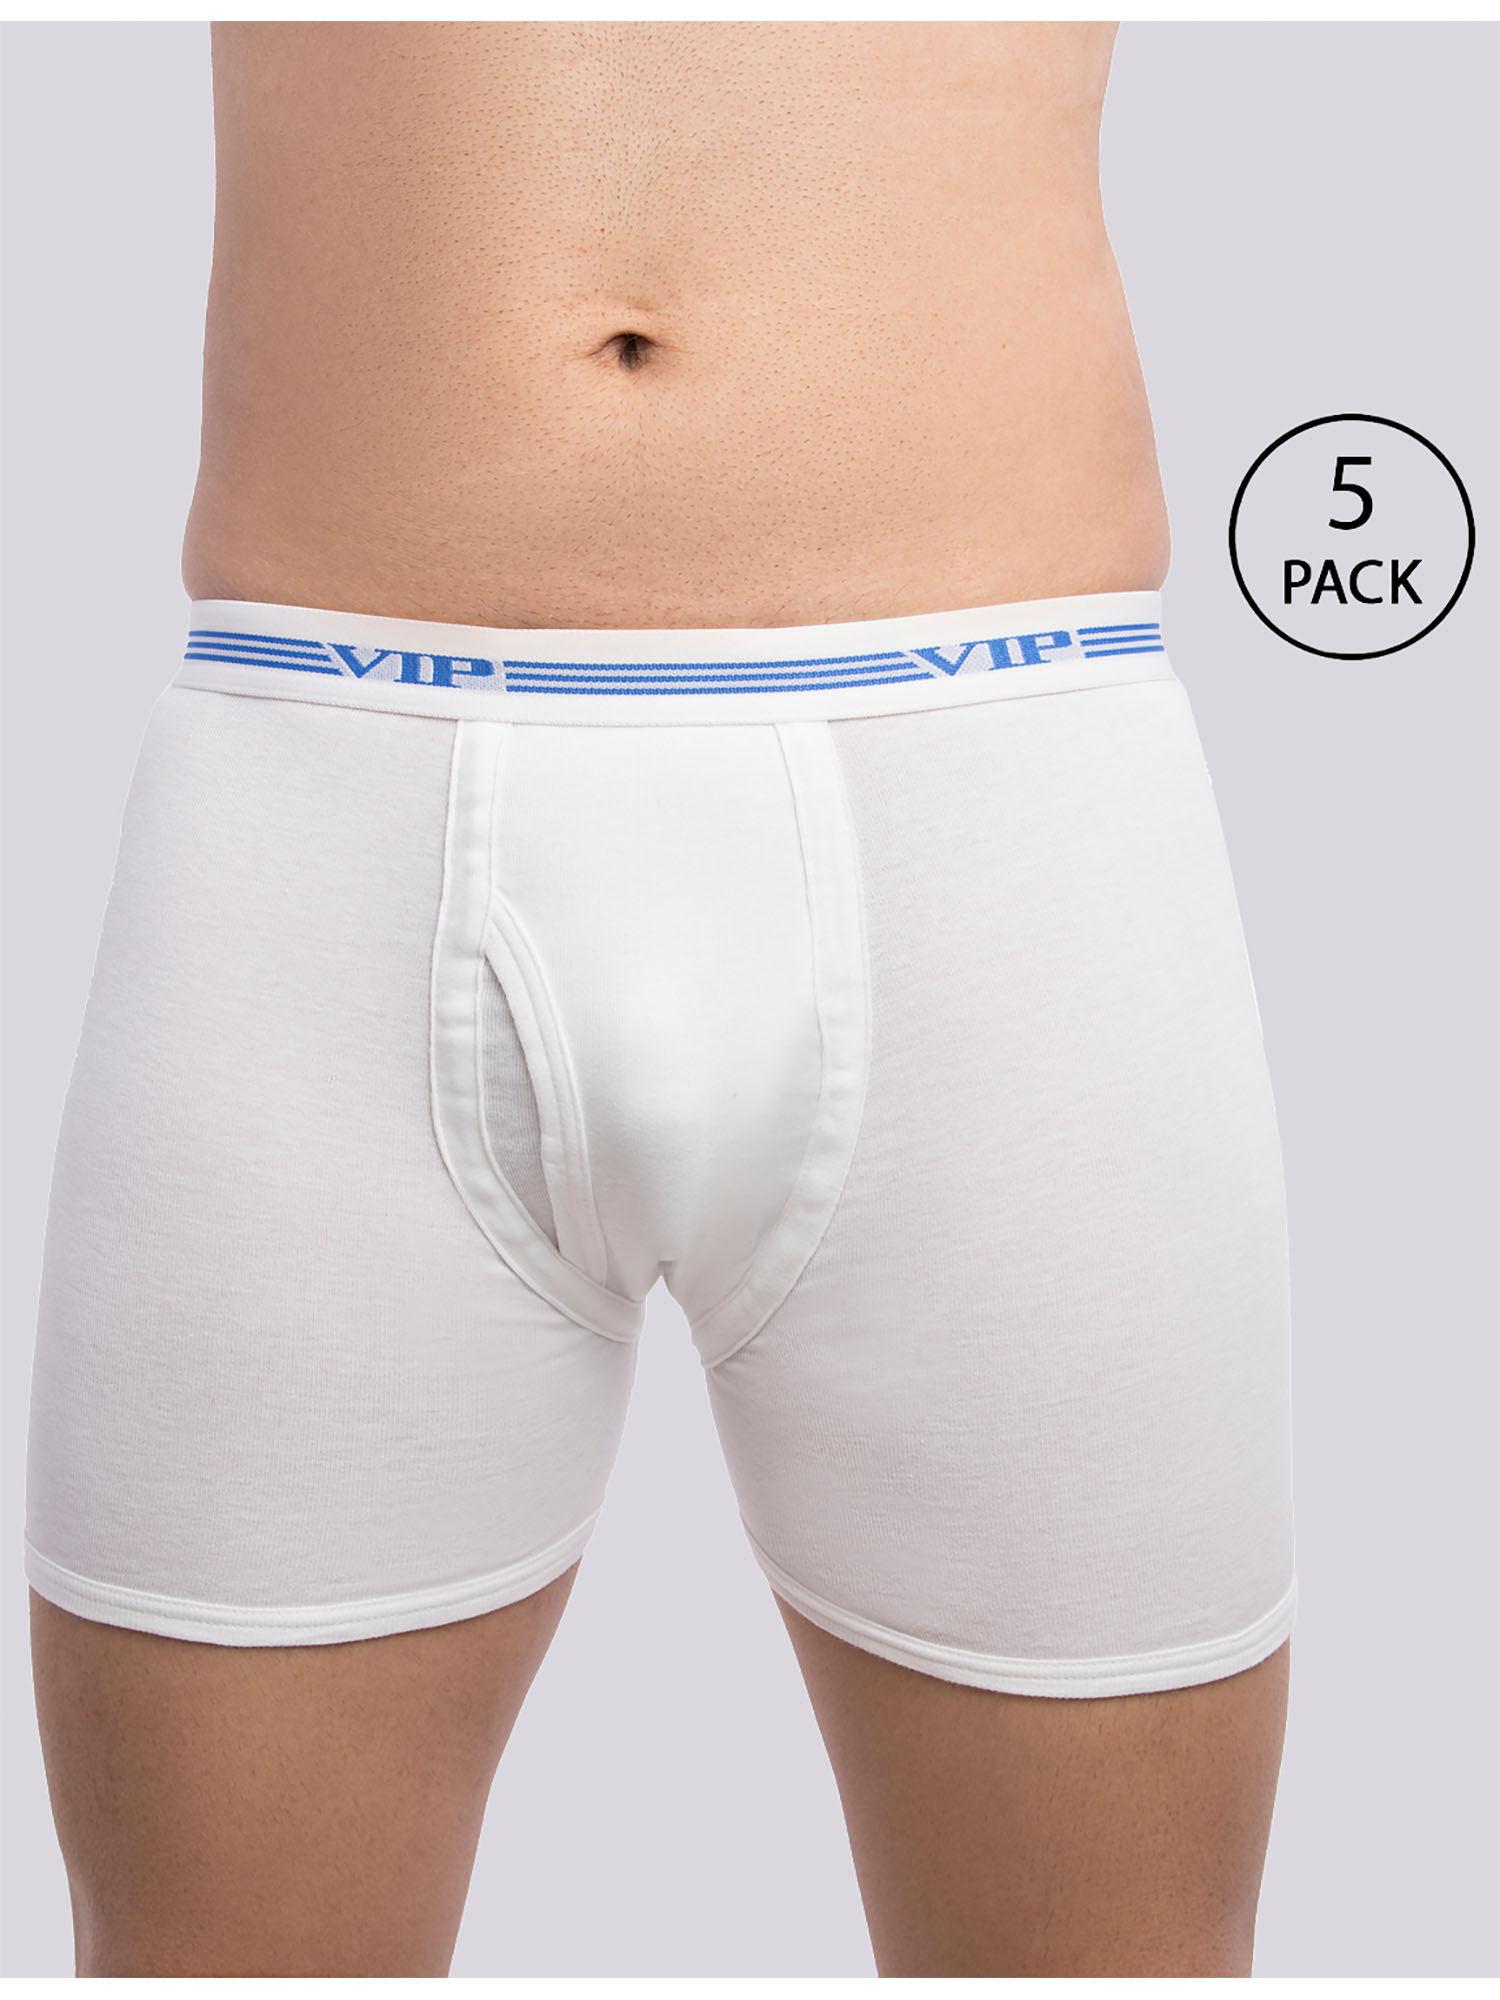 men's advanta solid white 100% cotton rib trunks (pack of 5)